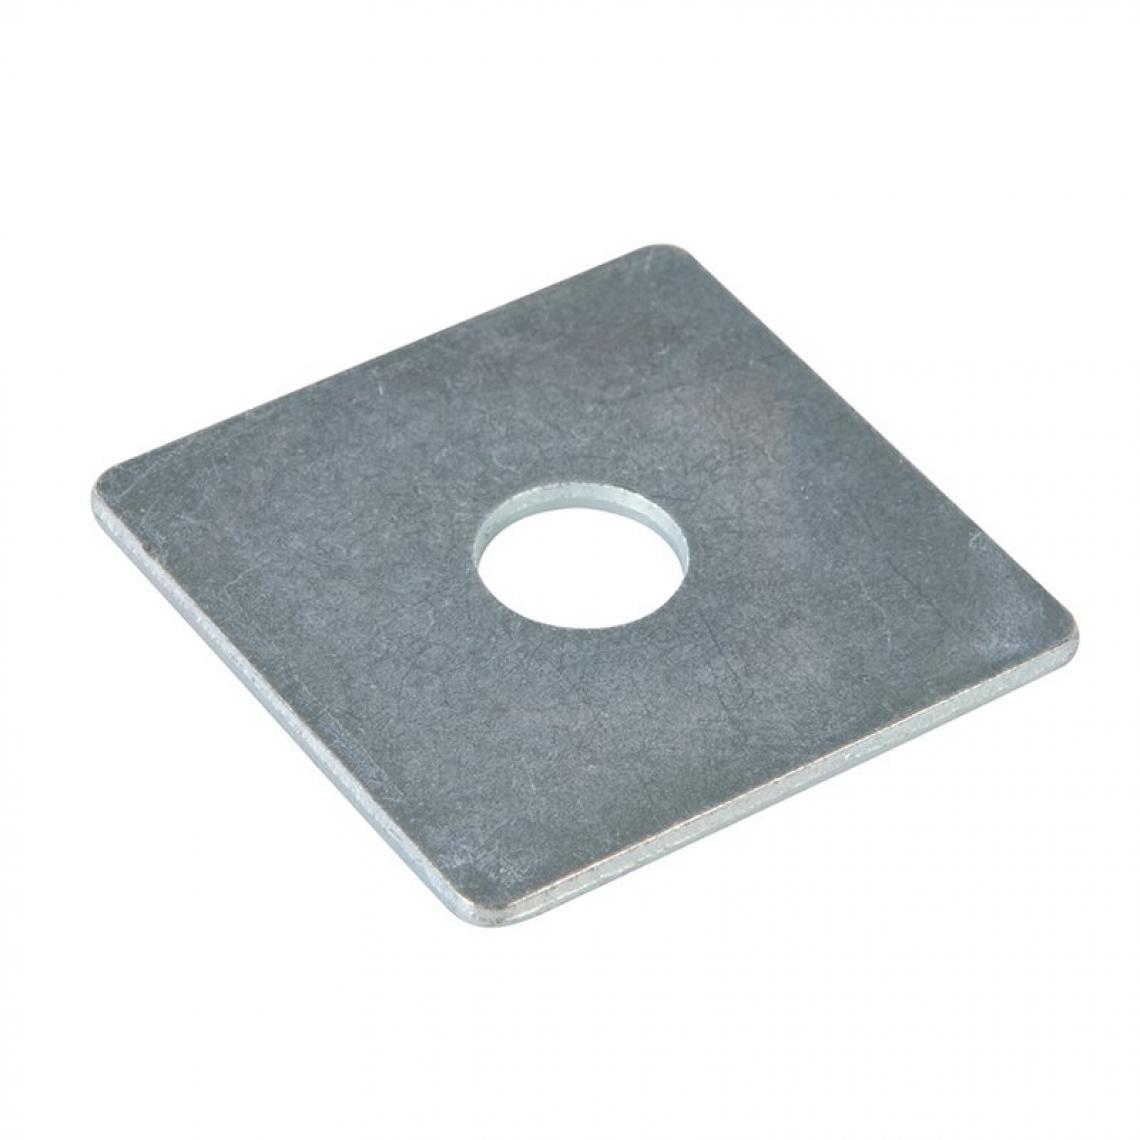 Fixman - Lot de 10 plaques rondelles plates carrées - 50 mm x M12 - Glissière, coulisse de tiroir